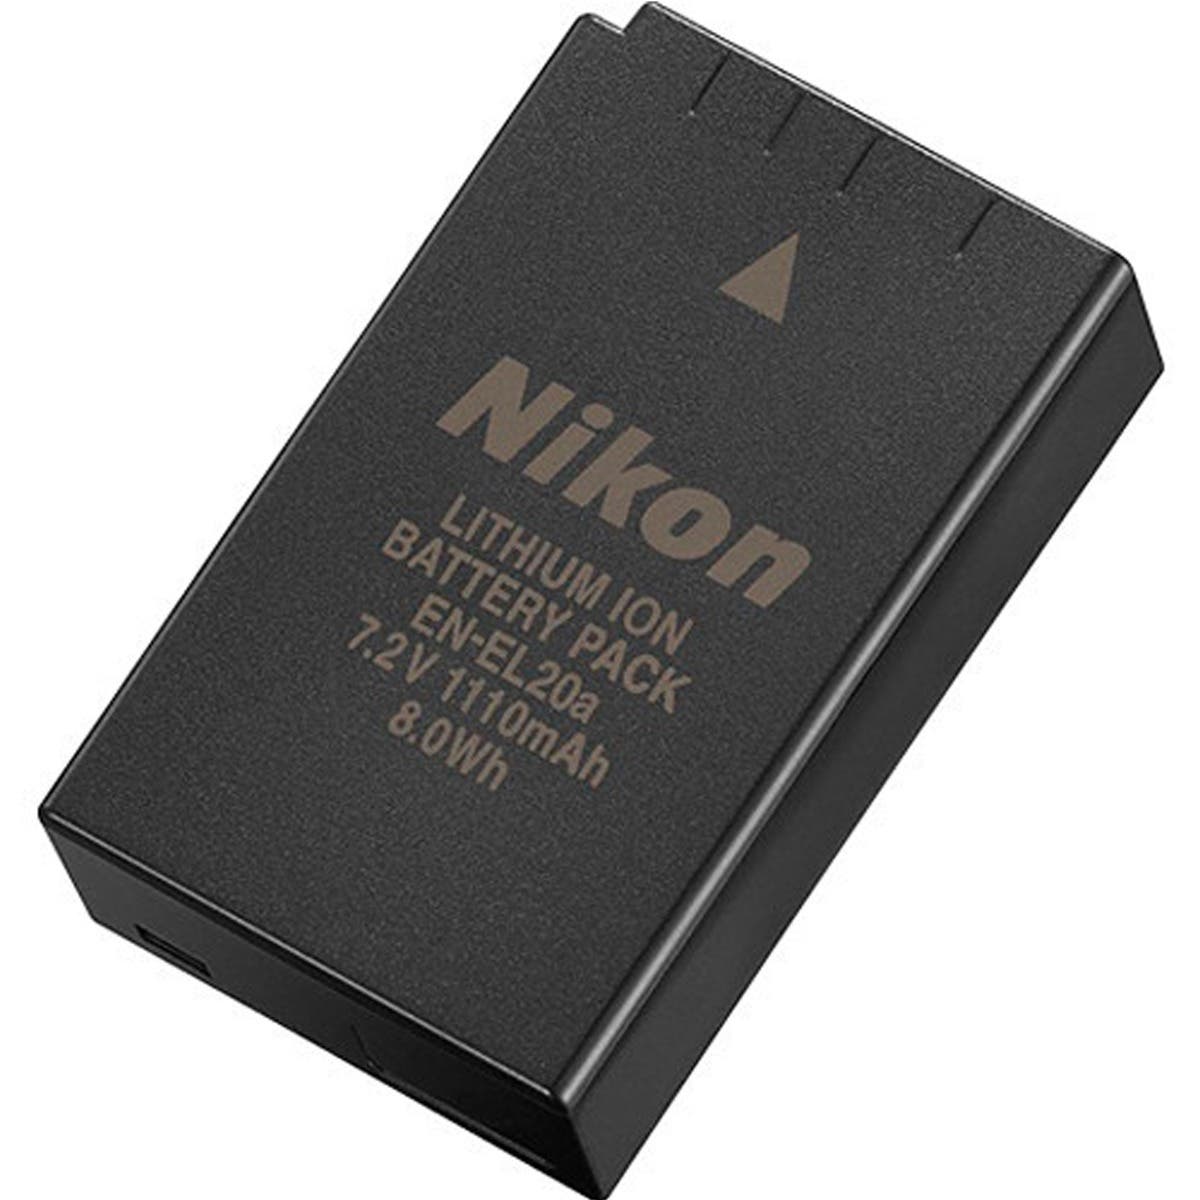 Nikon EN-EL20a Rechargeable Lithium-Ion Battery Pack